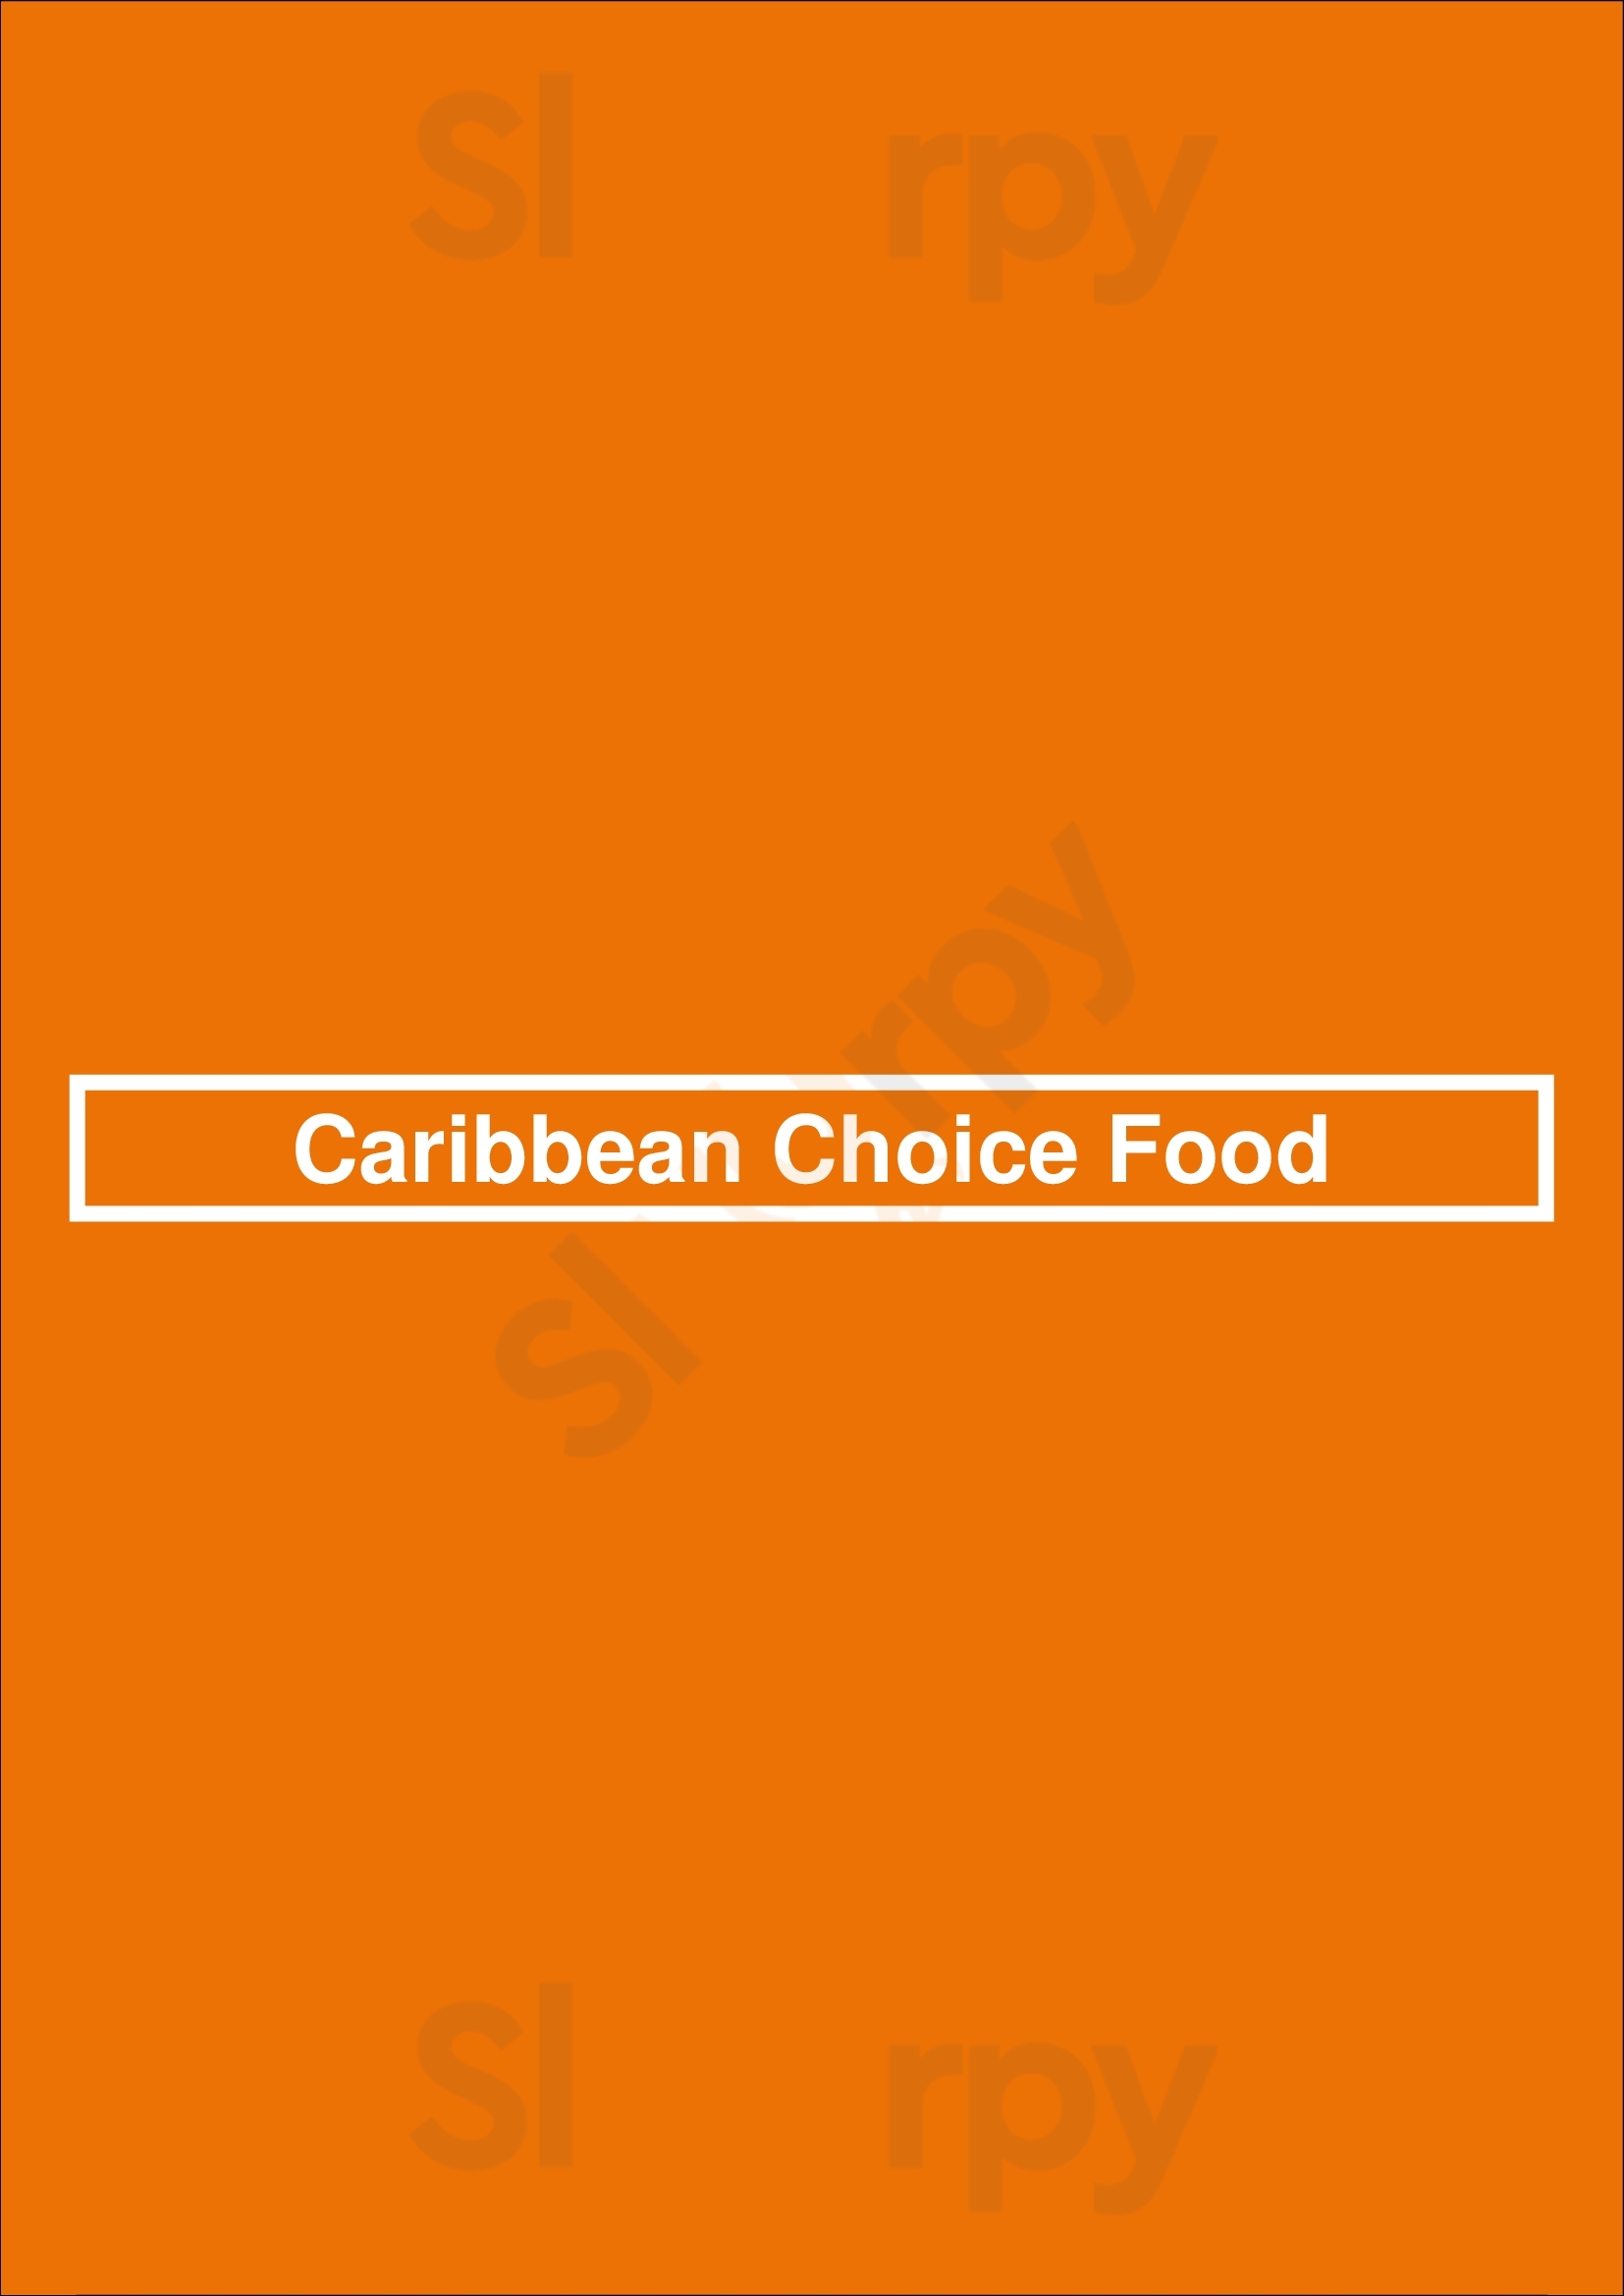 Caribbean Choice Food Calgary Menu - 1